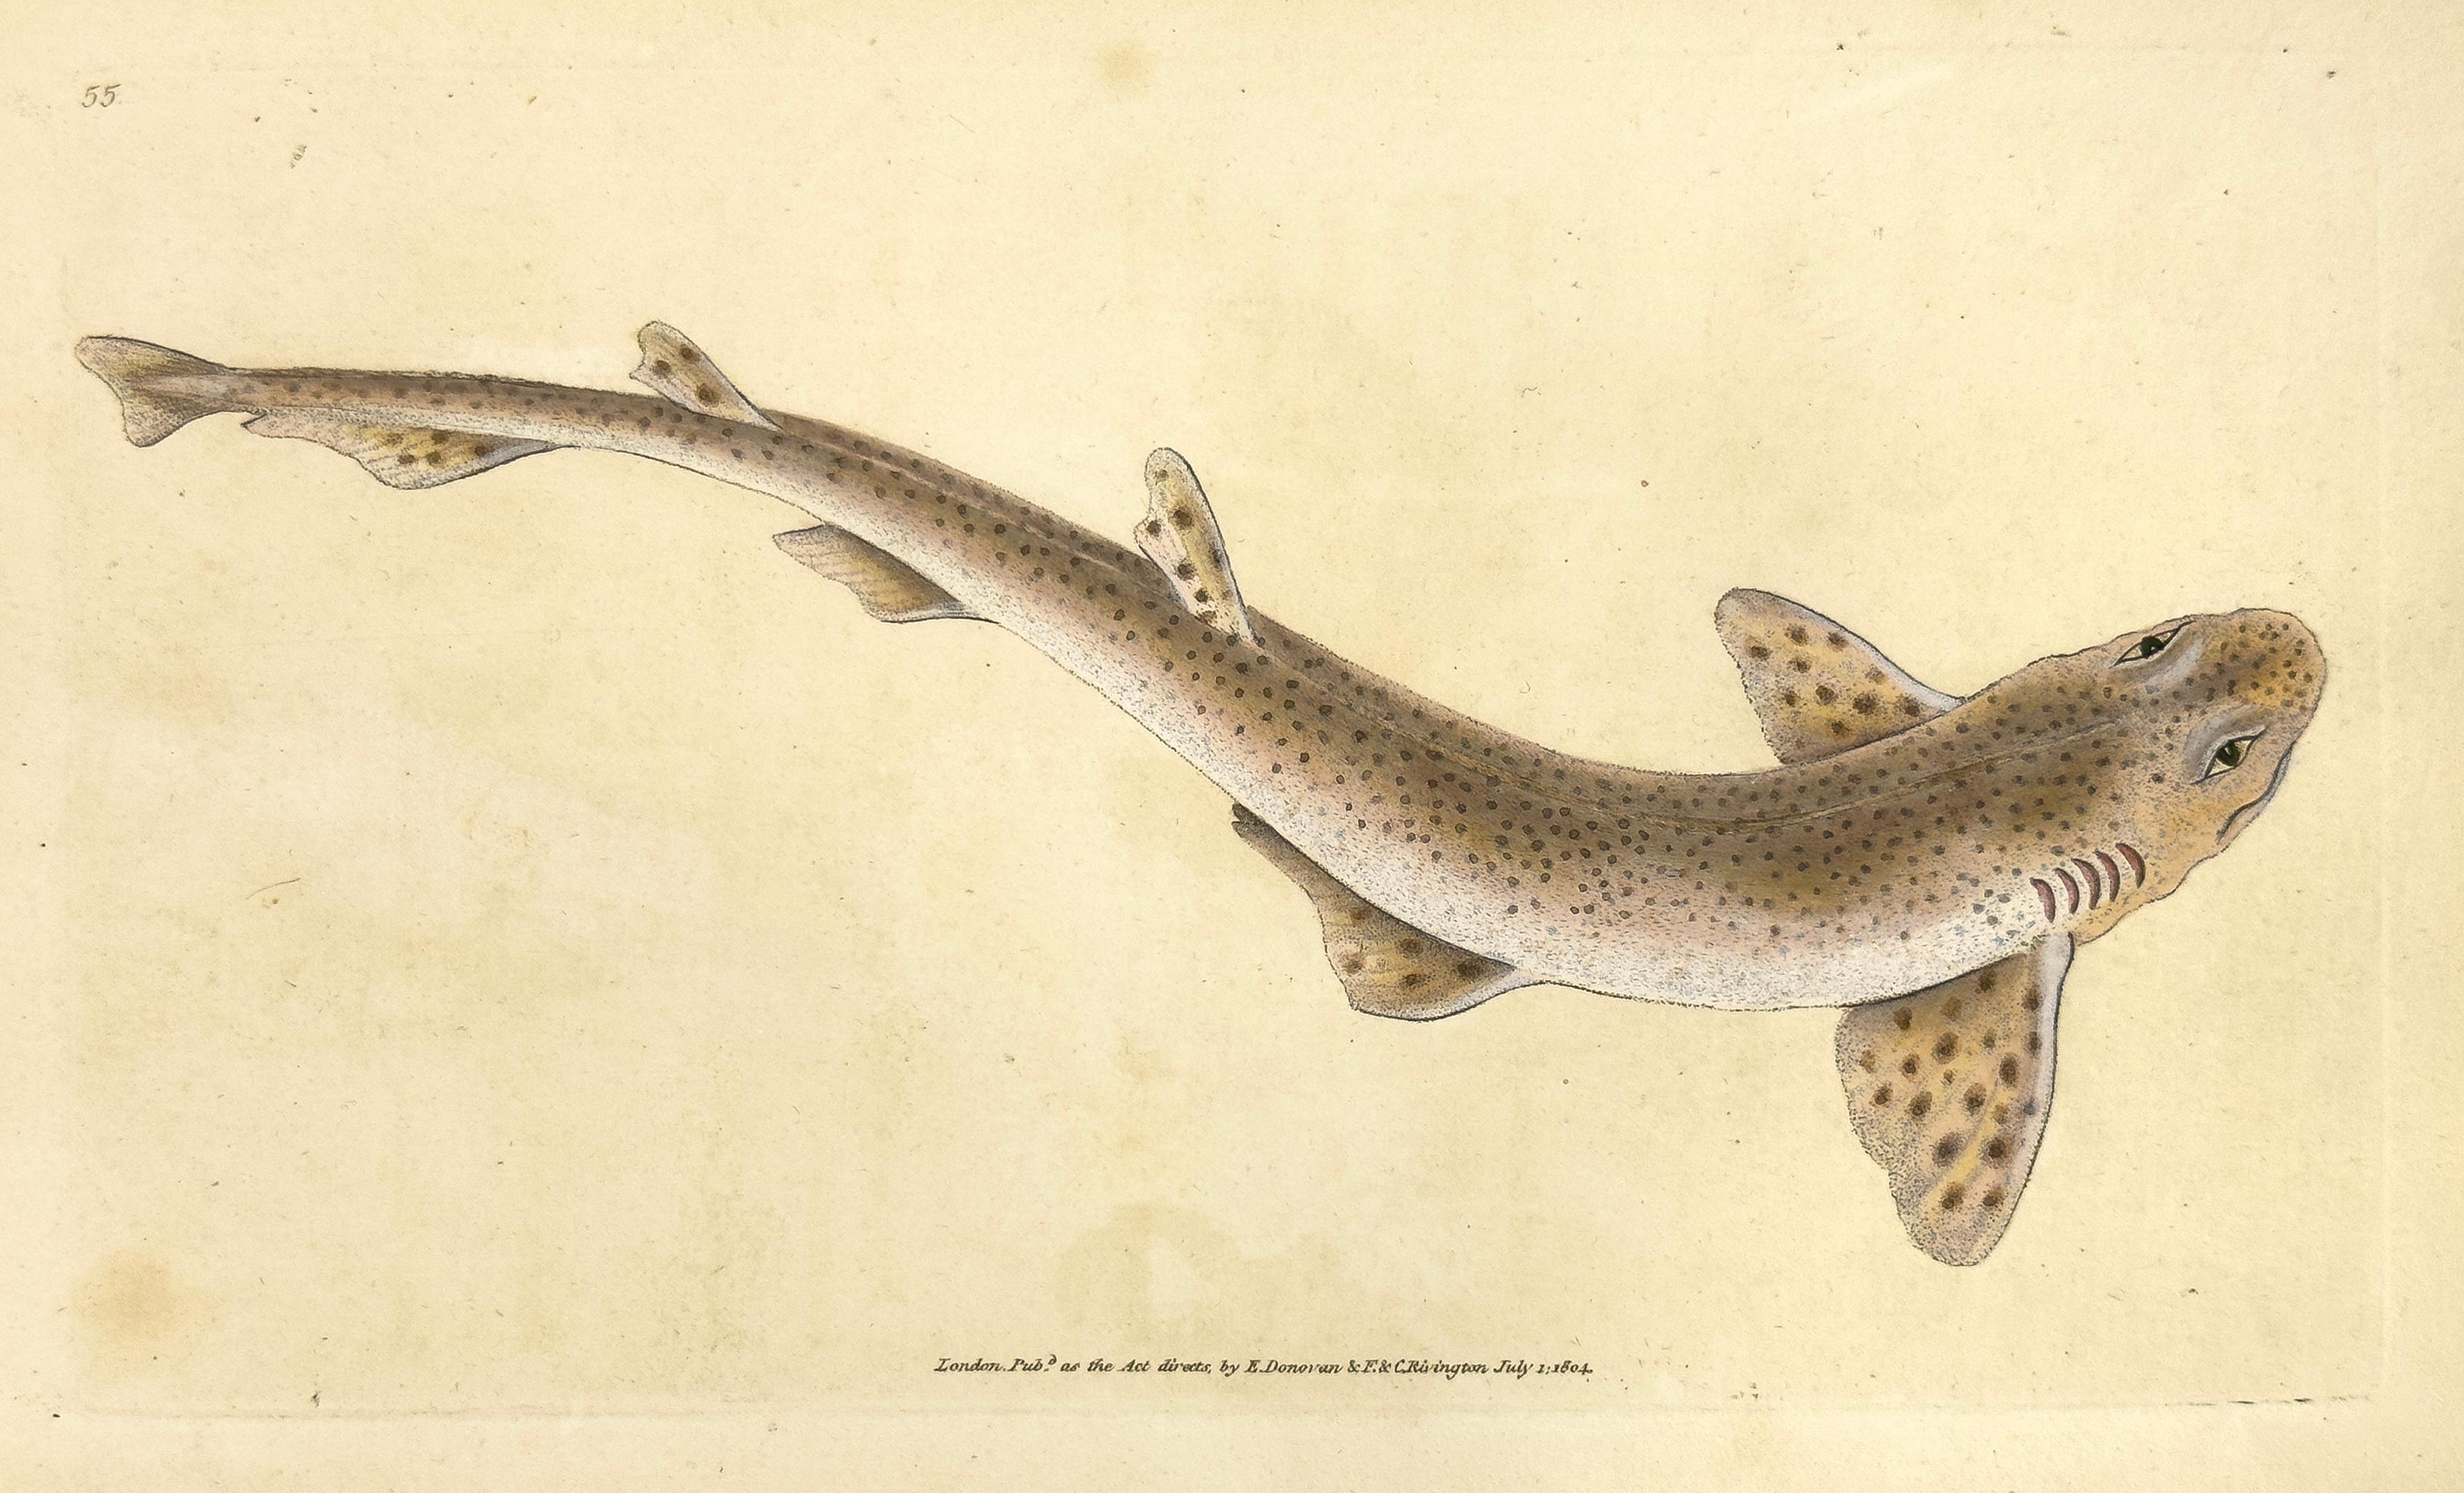 Edward Donovan Animal Print – 55: Squalus catulus, kleinere gepunktete Hai